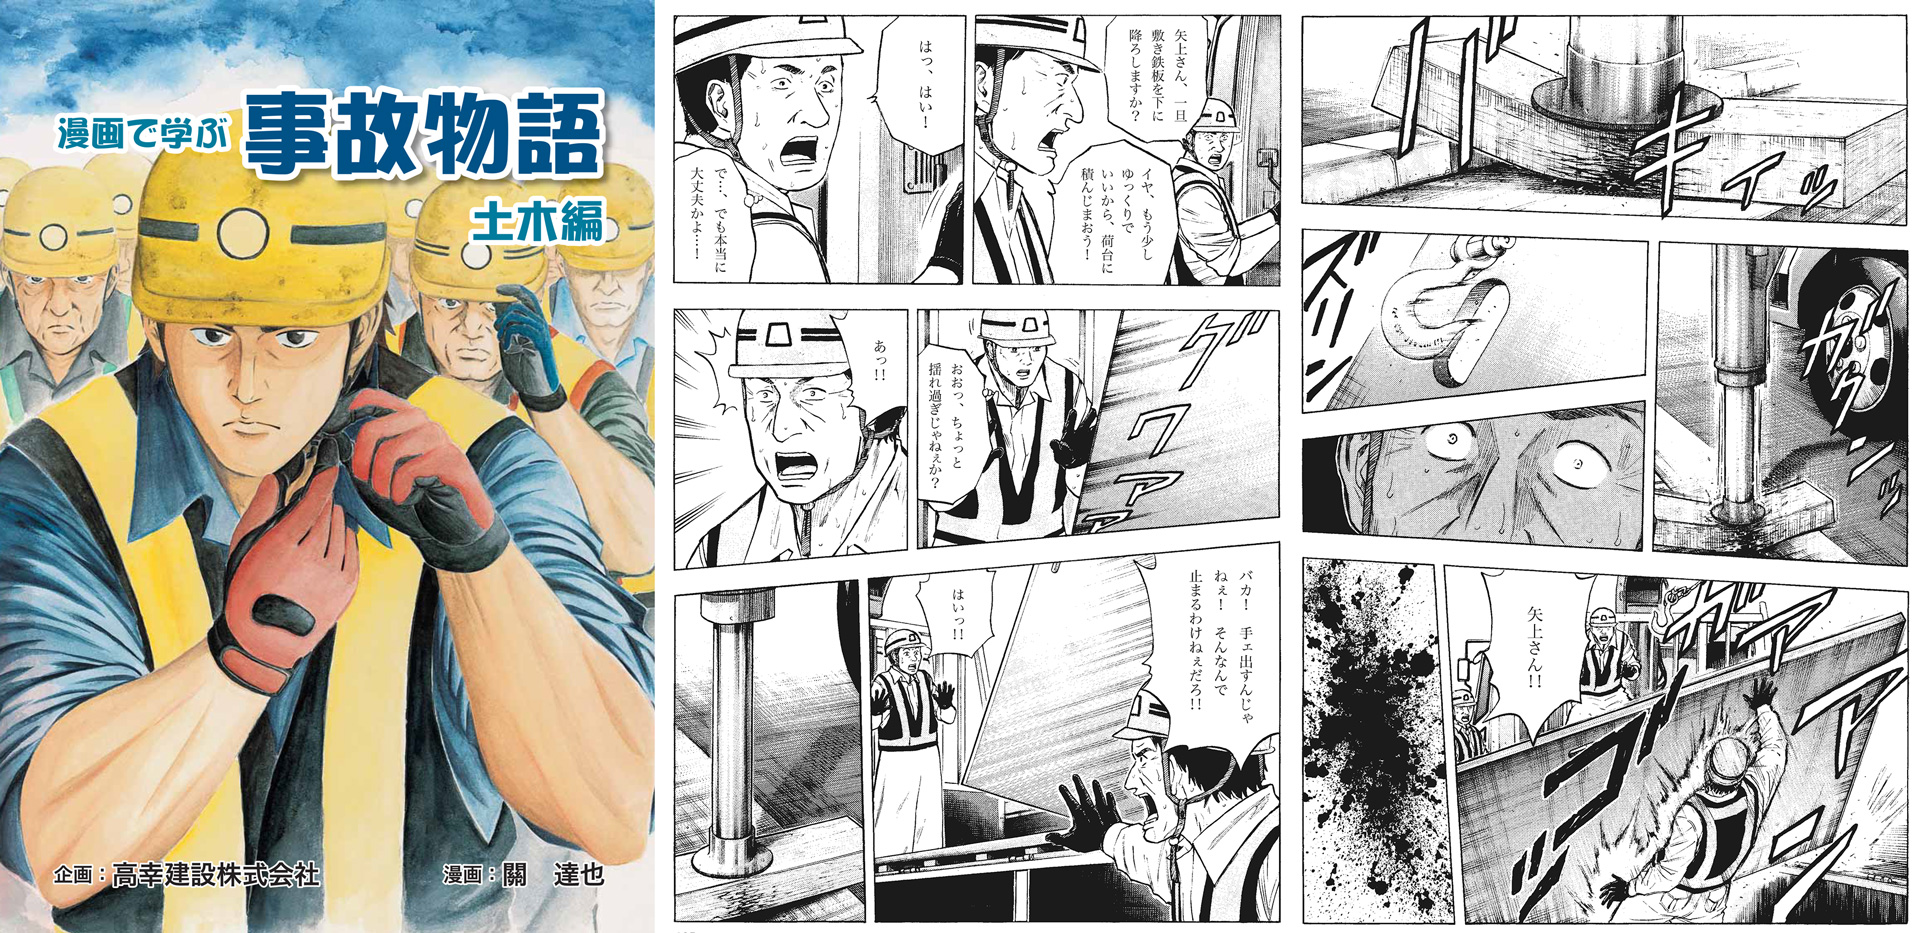 マンガ＆モーションコミックで工事の安全教育を行う(株)セーフティーファーストが公式ホームページ「safe1.jp」を新たに開設のサブ画像2